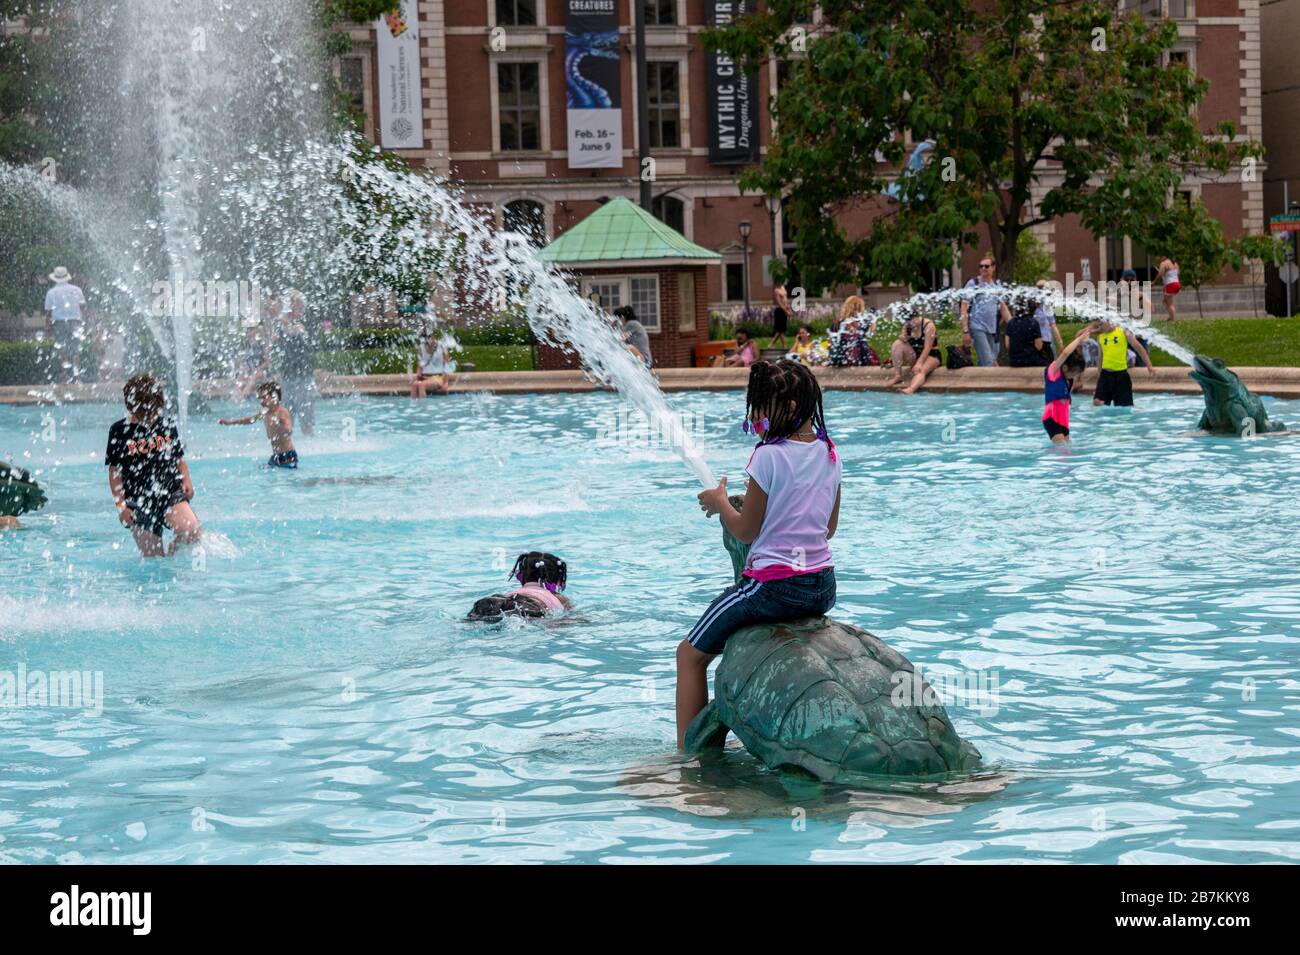 Giovane ragazza seduta sulla fontana di tartaruga che spara acqua dalla bocca, bambini che giocano e nuotano in una caratteristica ornata dell'acqua, a Philadelphia Foto Stock